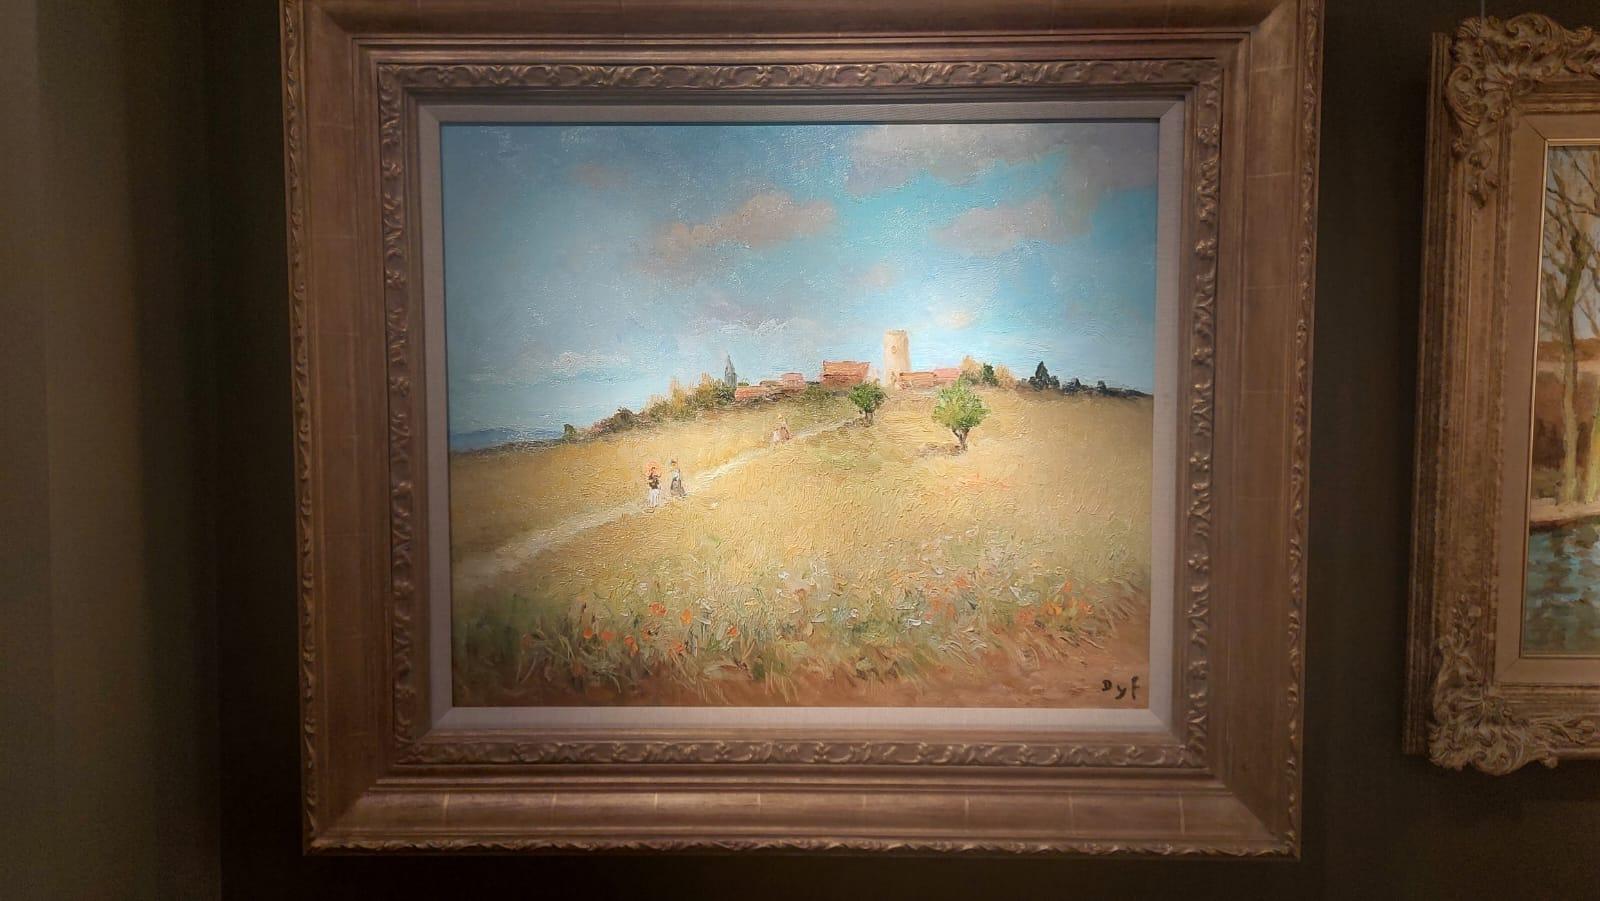 Balade dans le champ de blé - Impressionist Painting by Marcel Dyf